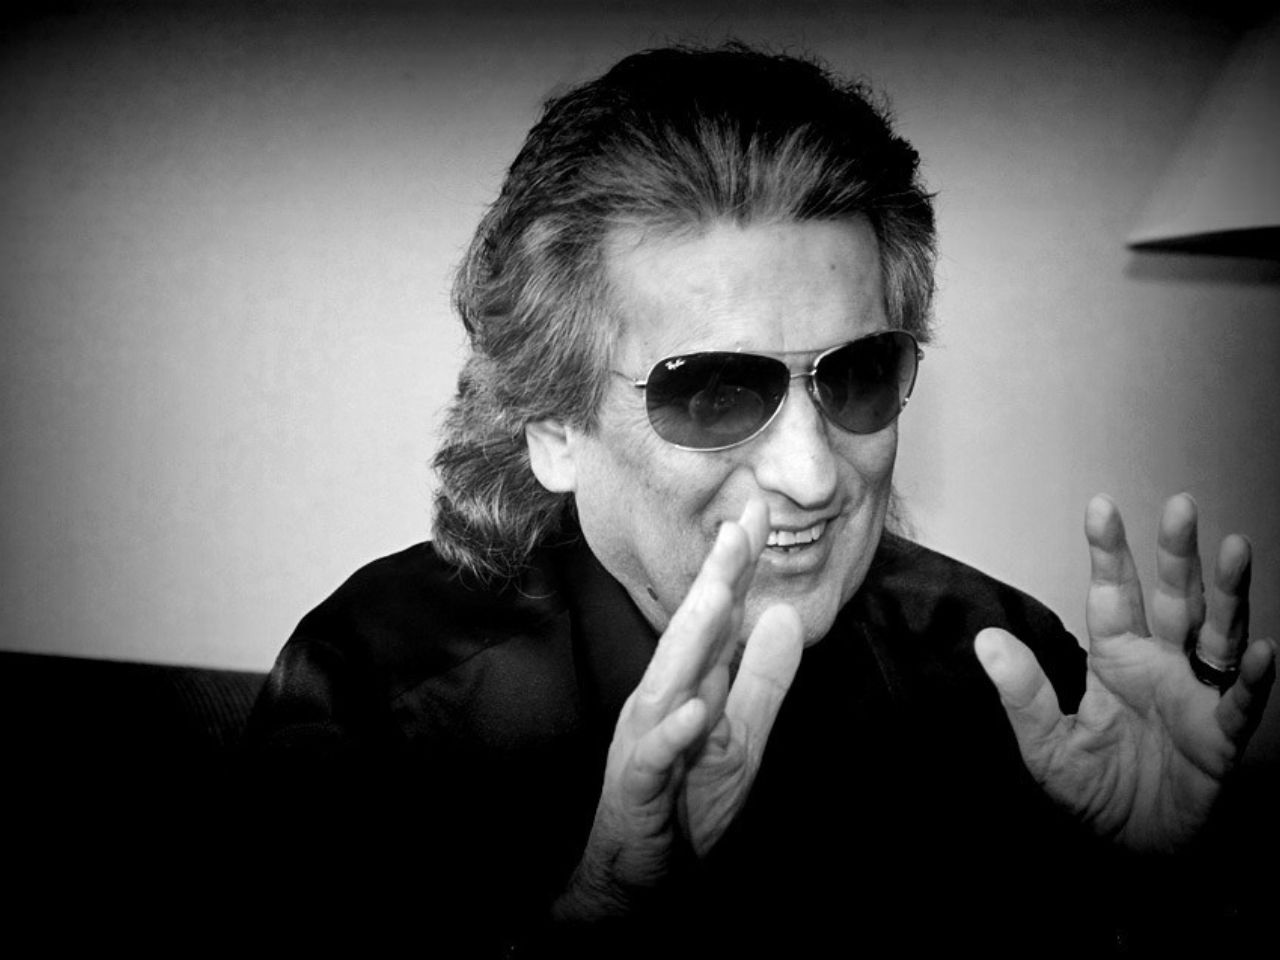 L’addio a Toto Cutugno, l’artista che ha cantato al mondo “l’italiano vero”